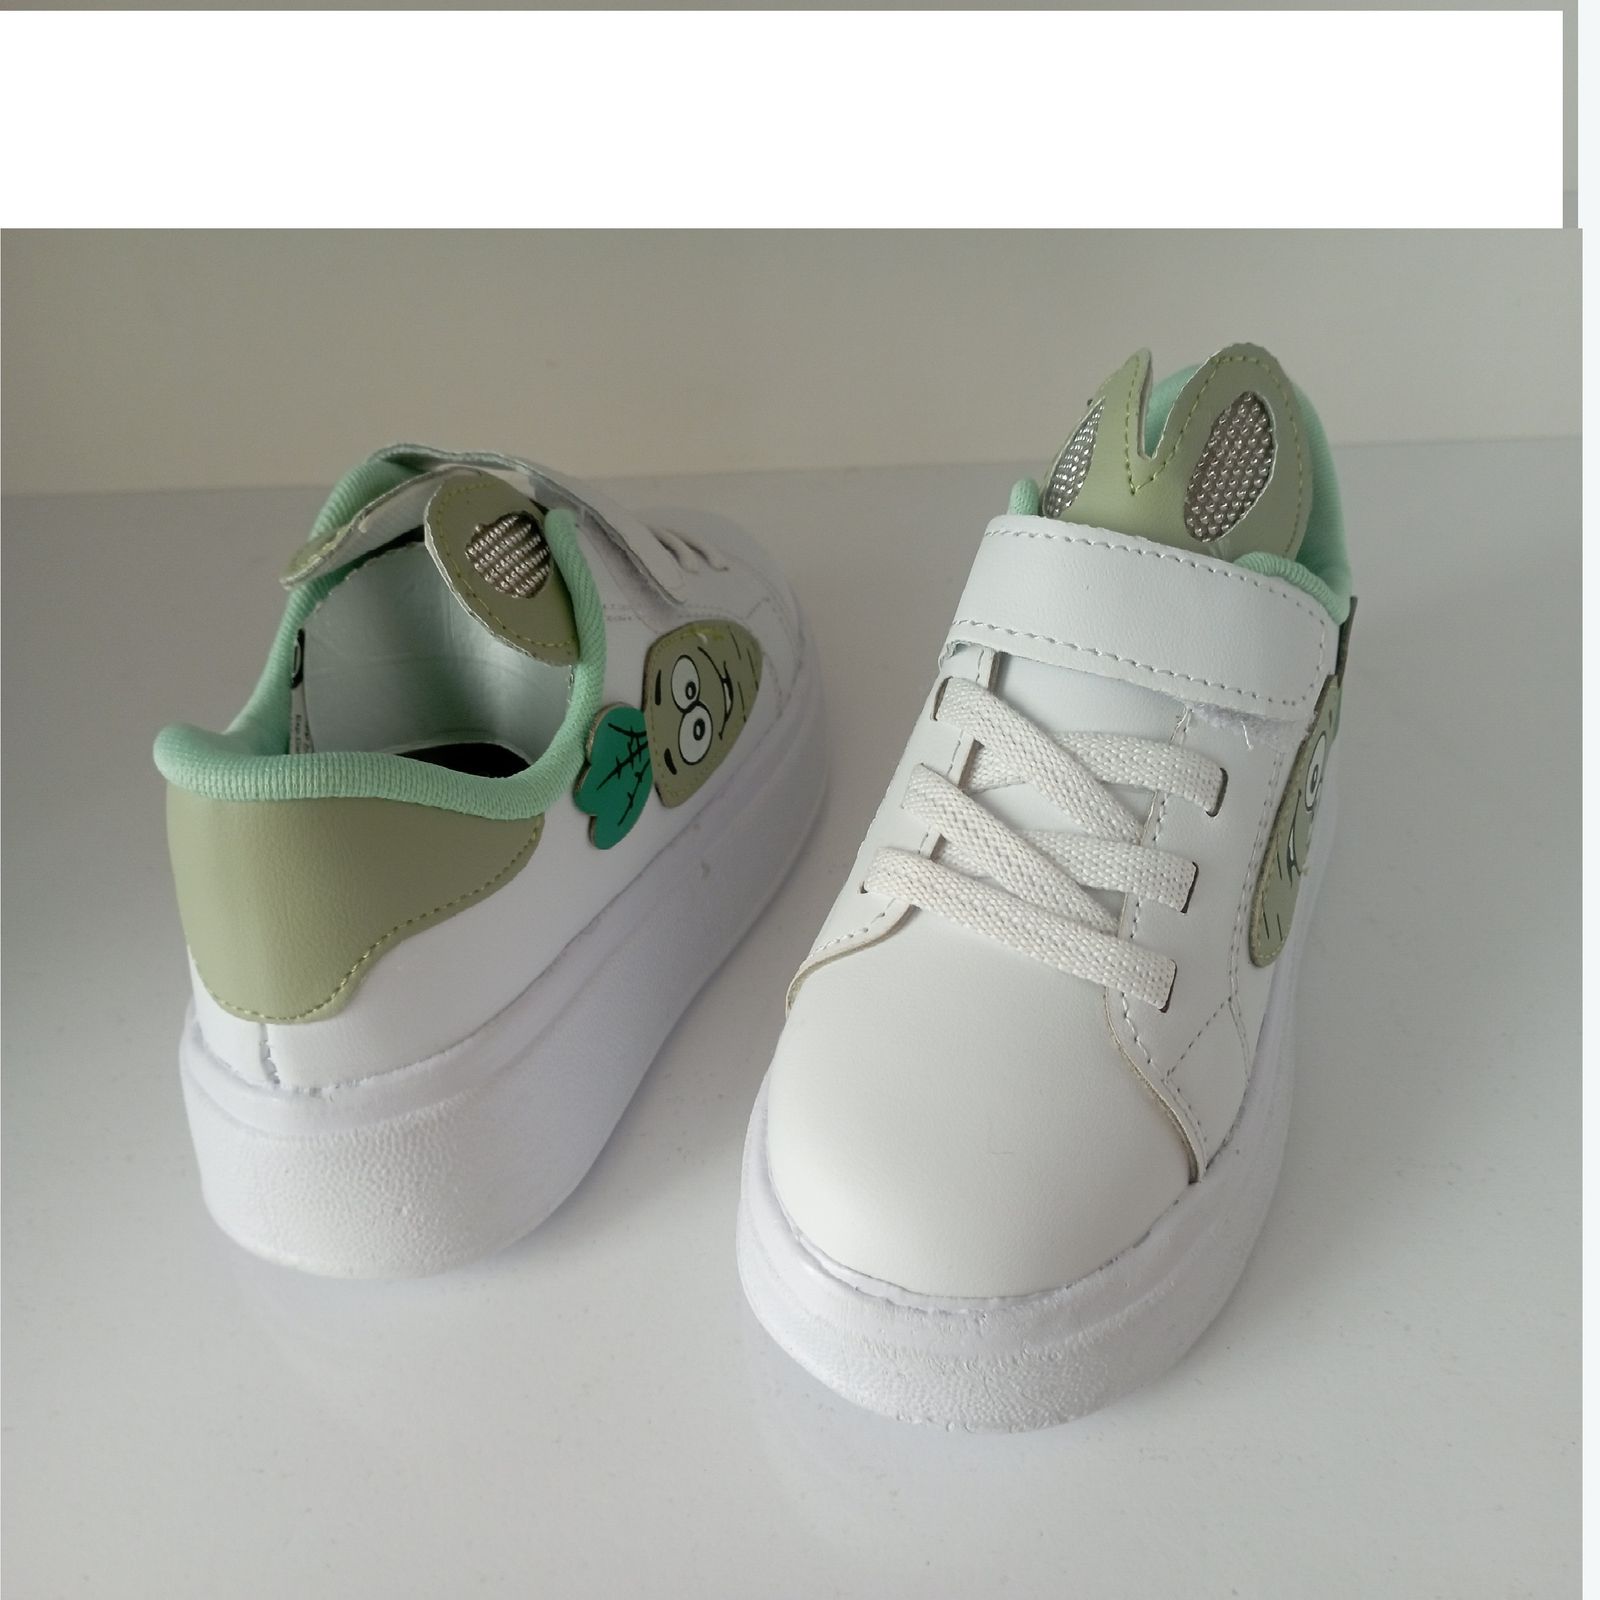 کفش راحتی بچگانه مدل خرگوشی کد 001 رنگ سبز -  - 2